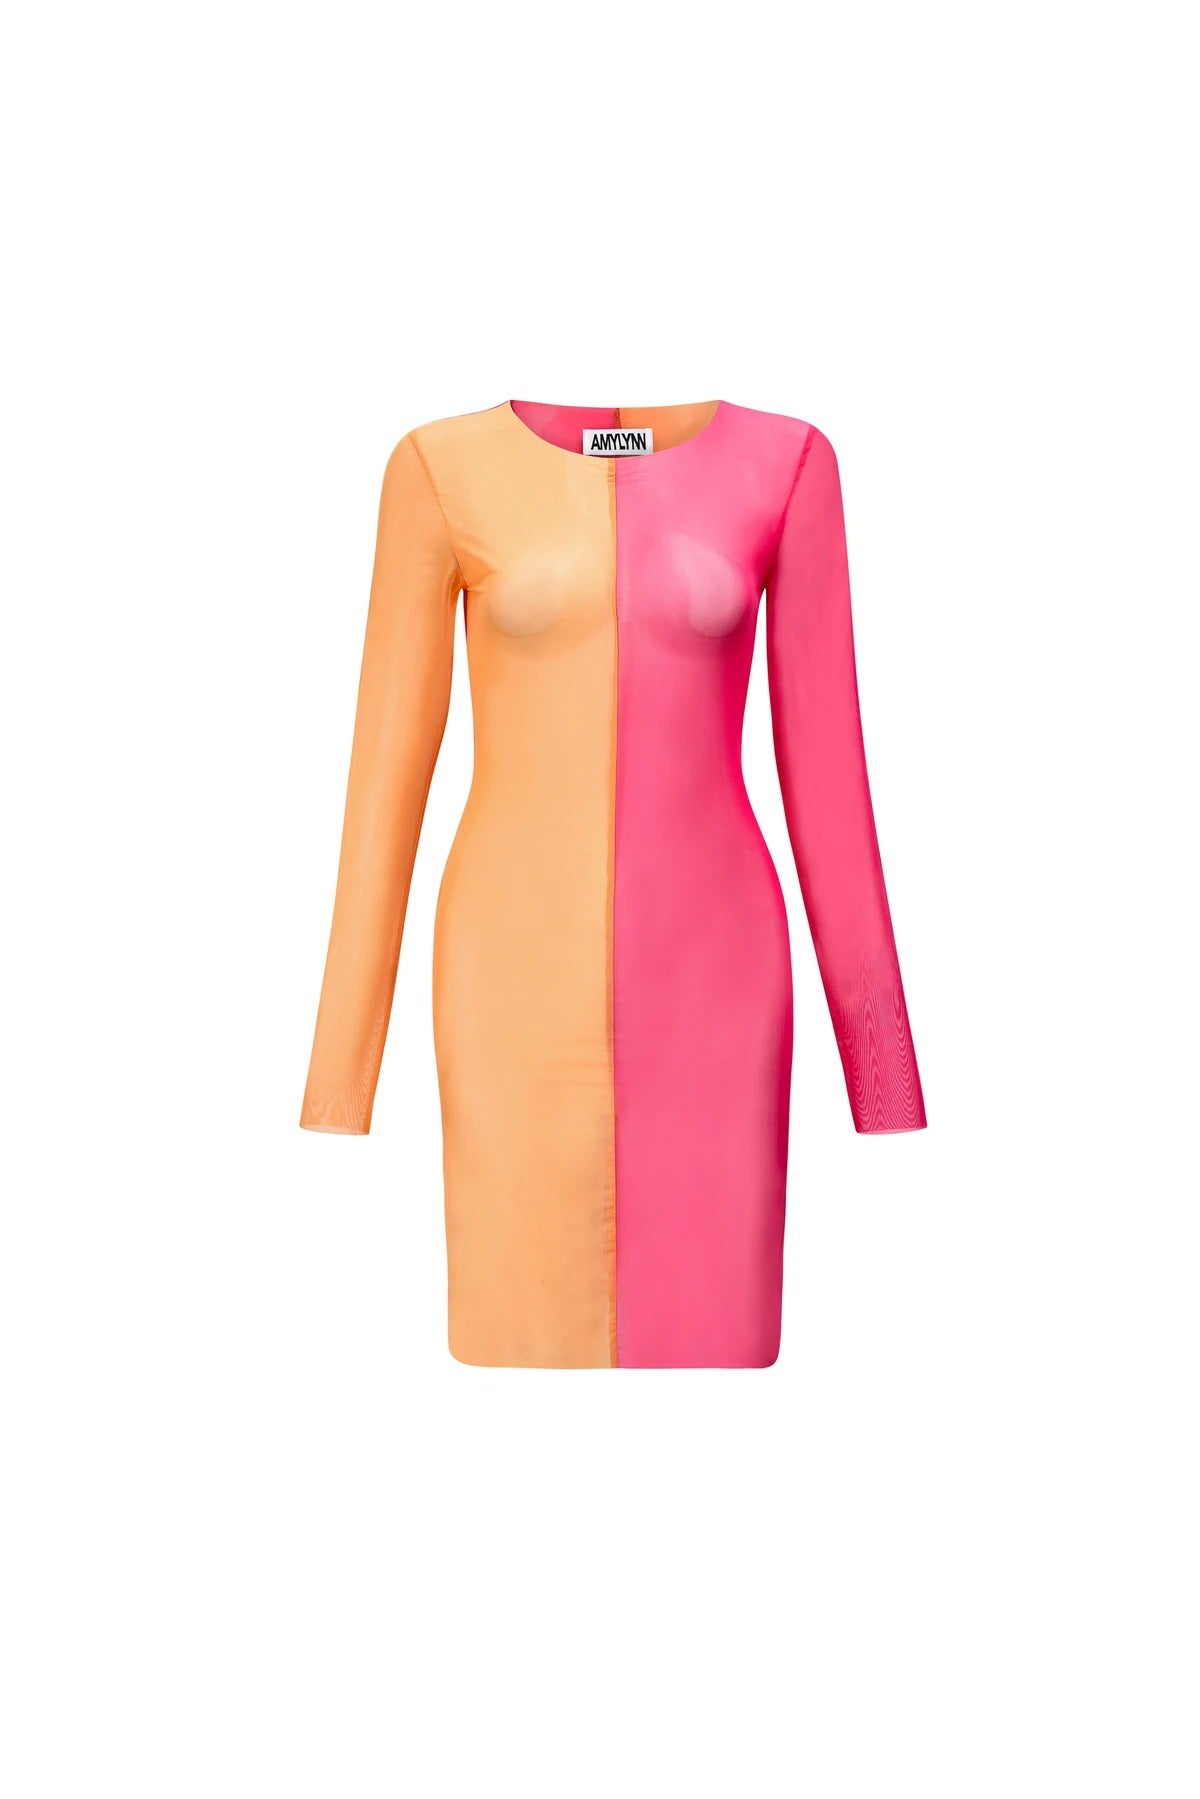 Amy Lynn + Gemini Colour Block Sheer Dress